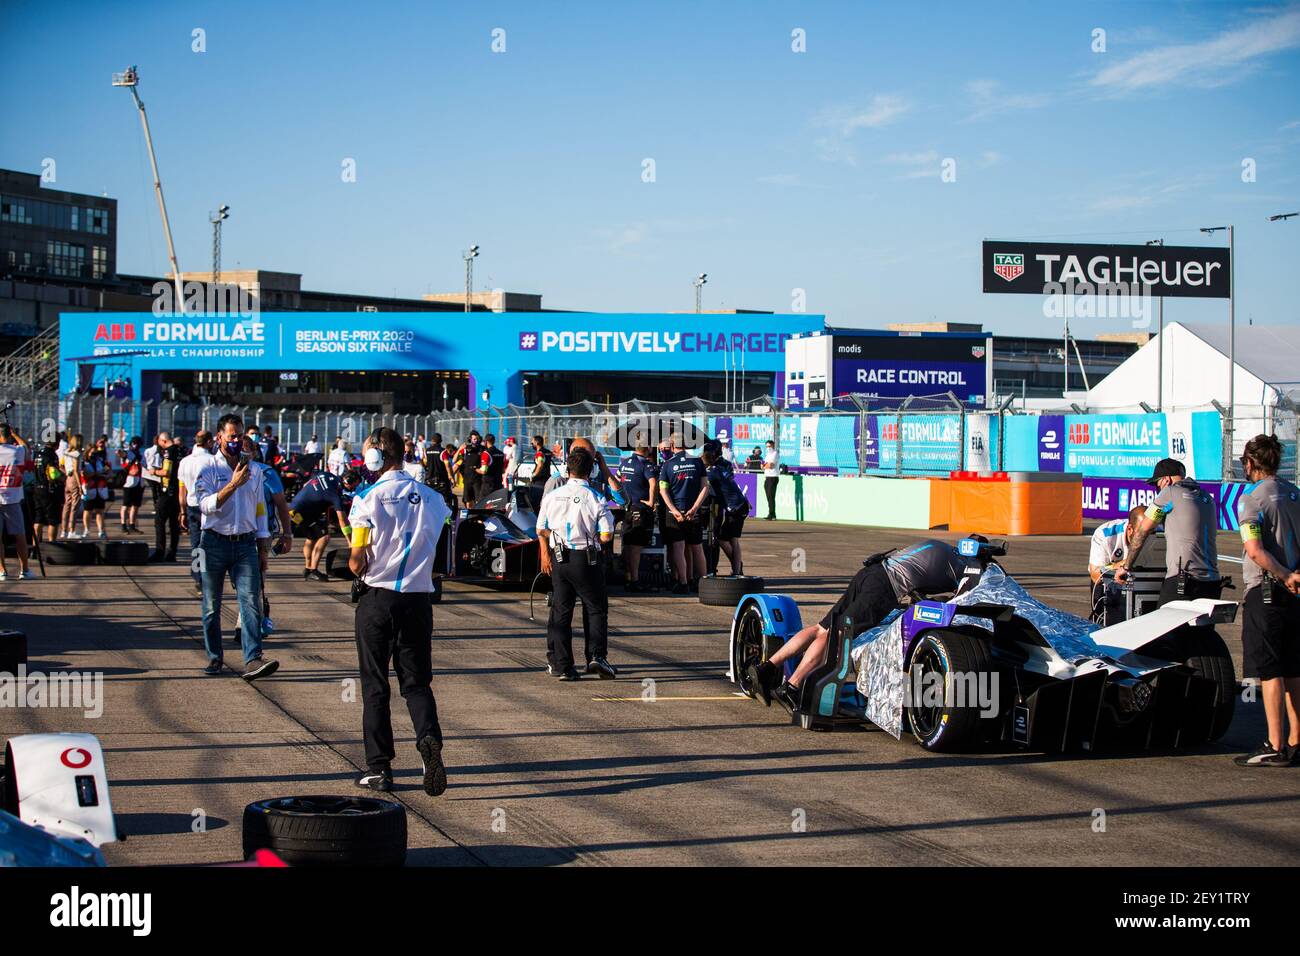 Grille de départ grille de départ lors du E-Prix I de Berlin 2020, 7e tour du championnat de Formule E 2019-20, sur le circuit de rue de l'aéroport de Tempelhof du 5 au 6 août, à Berlin, Allemagne - photo Germain Hazard / DPPI Banque D'Images